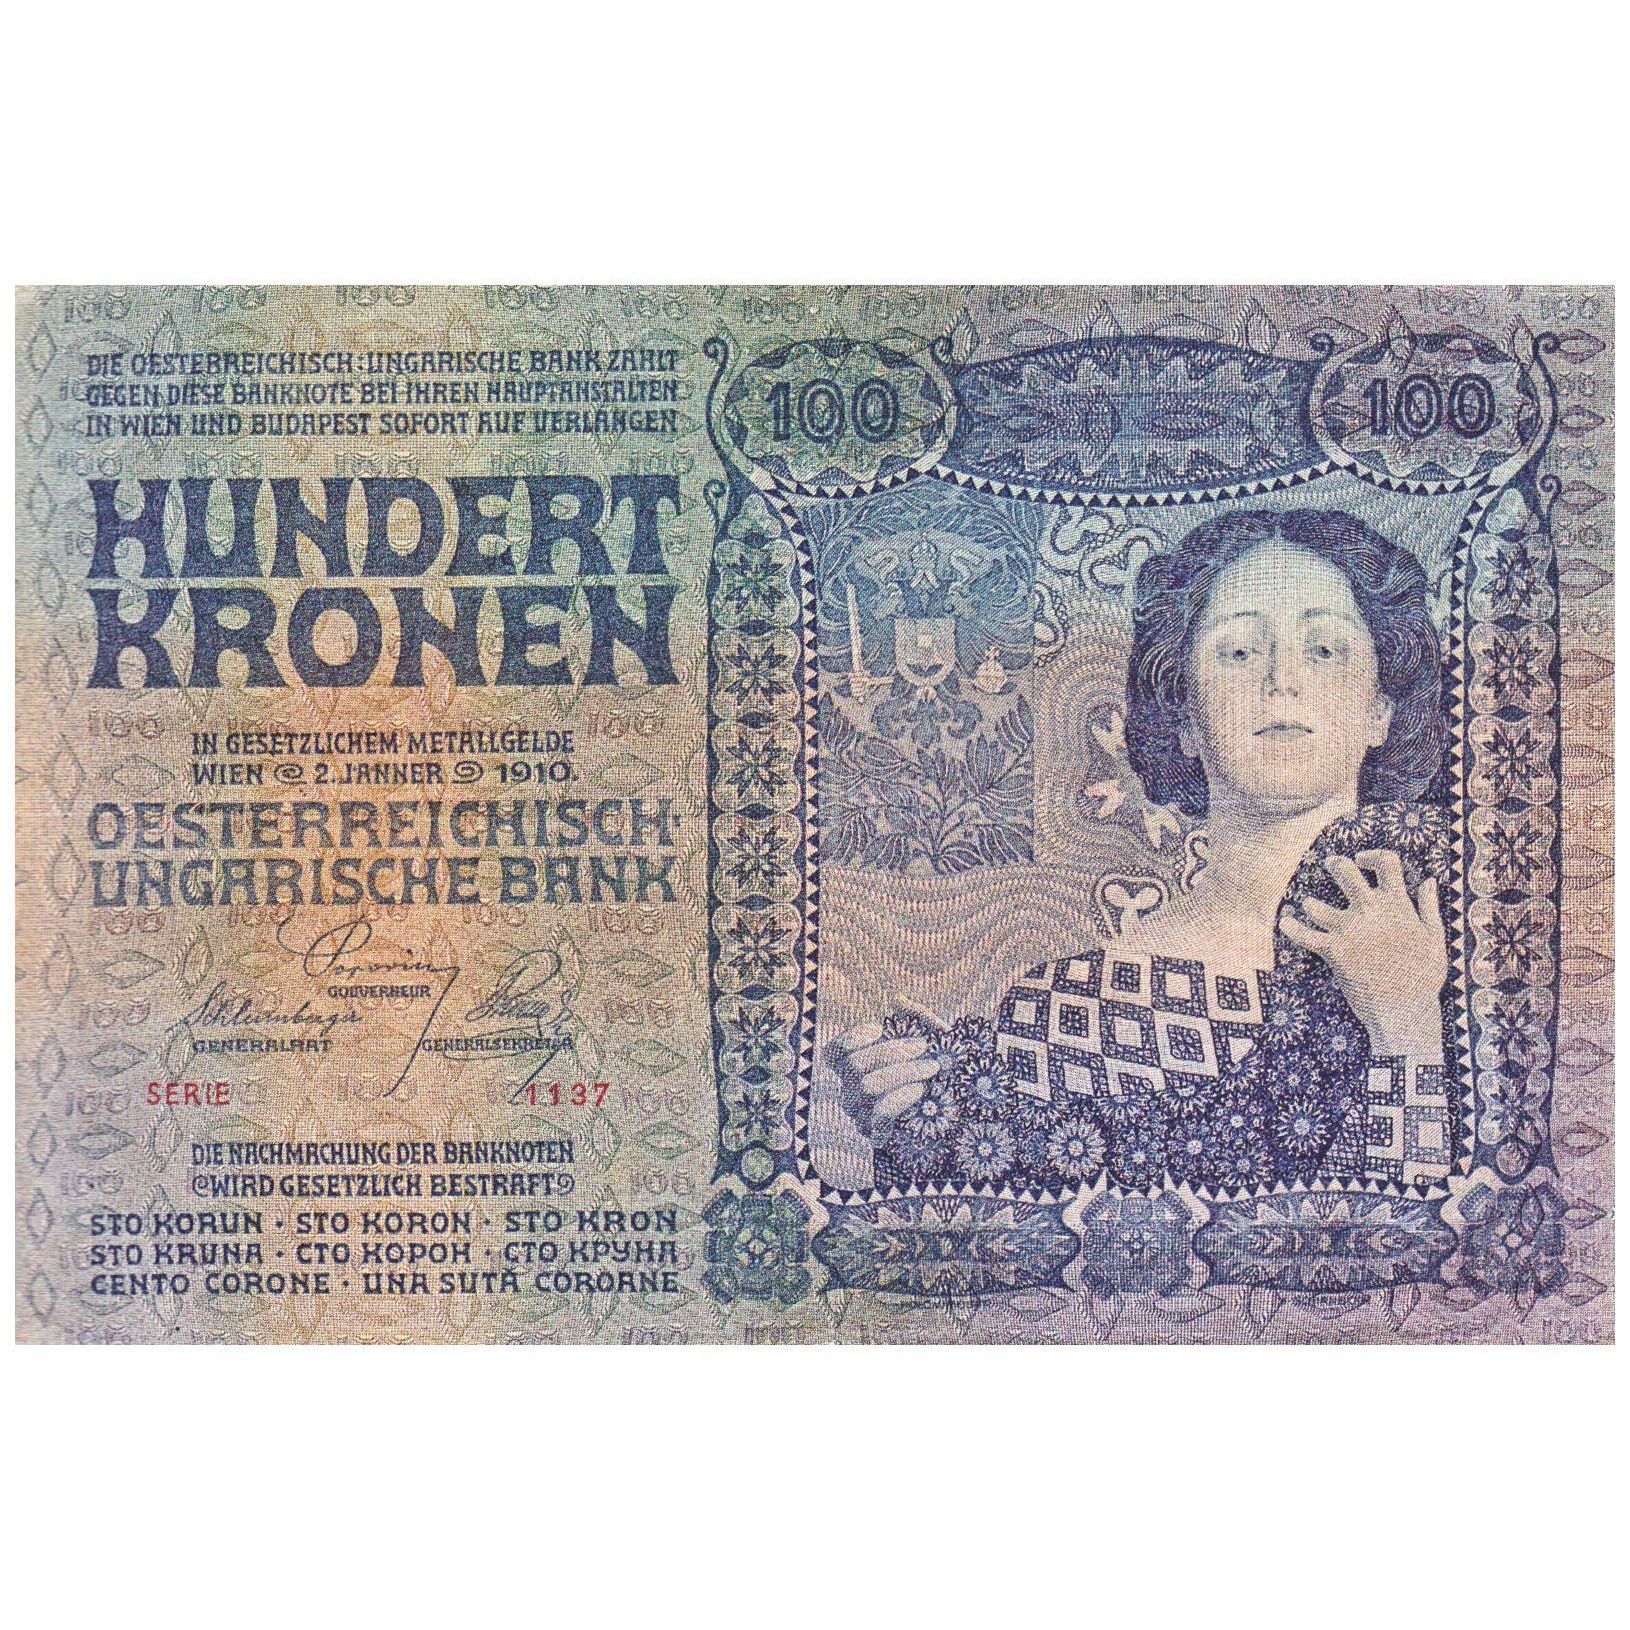 Koloman Moser. 100 Kronen Banknote. 1910. Geldmuseum Nationalbank Wien